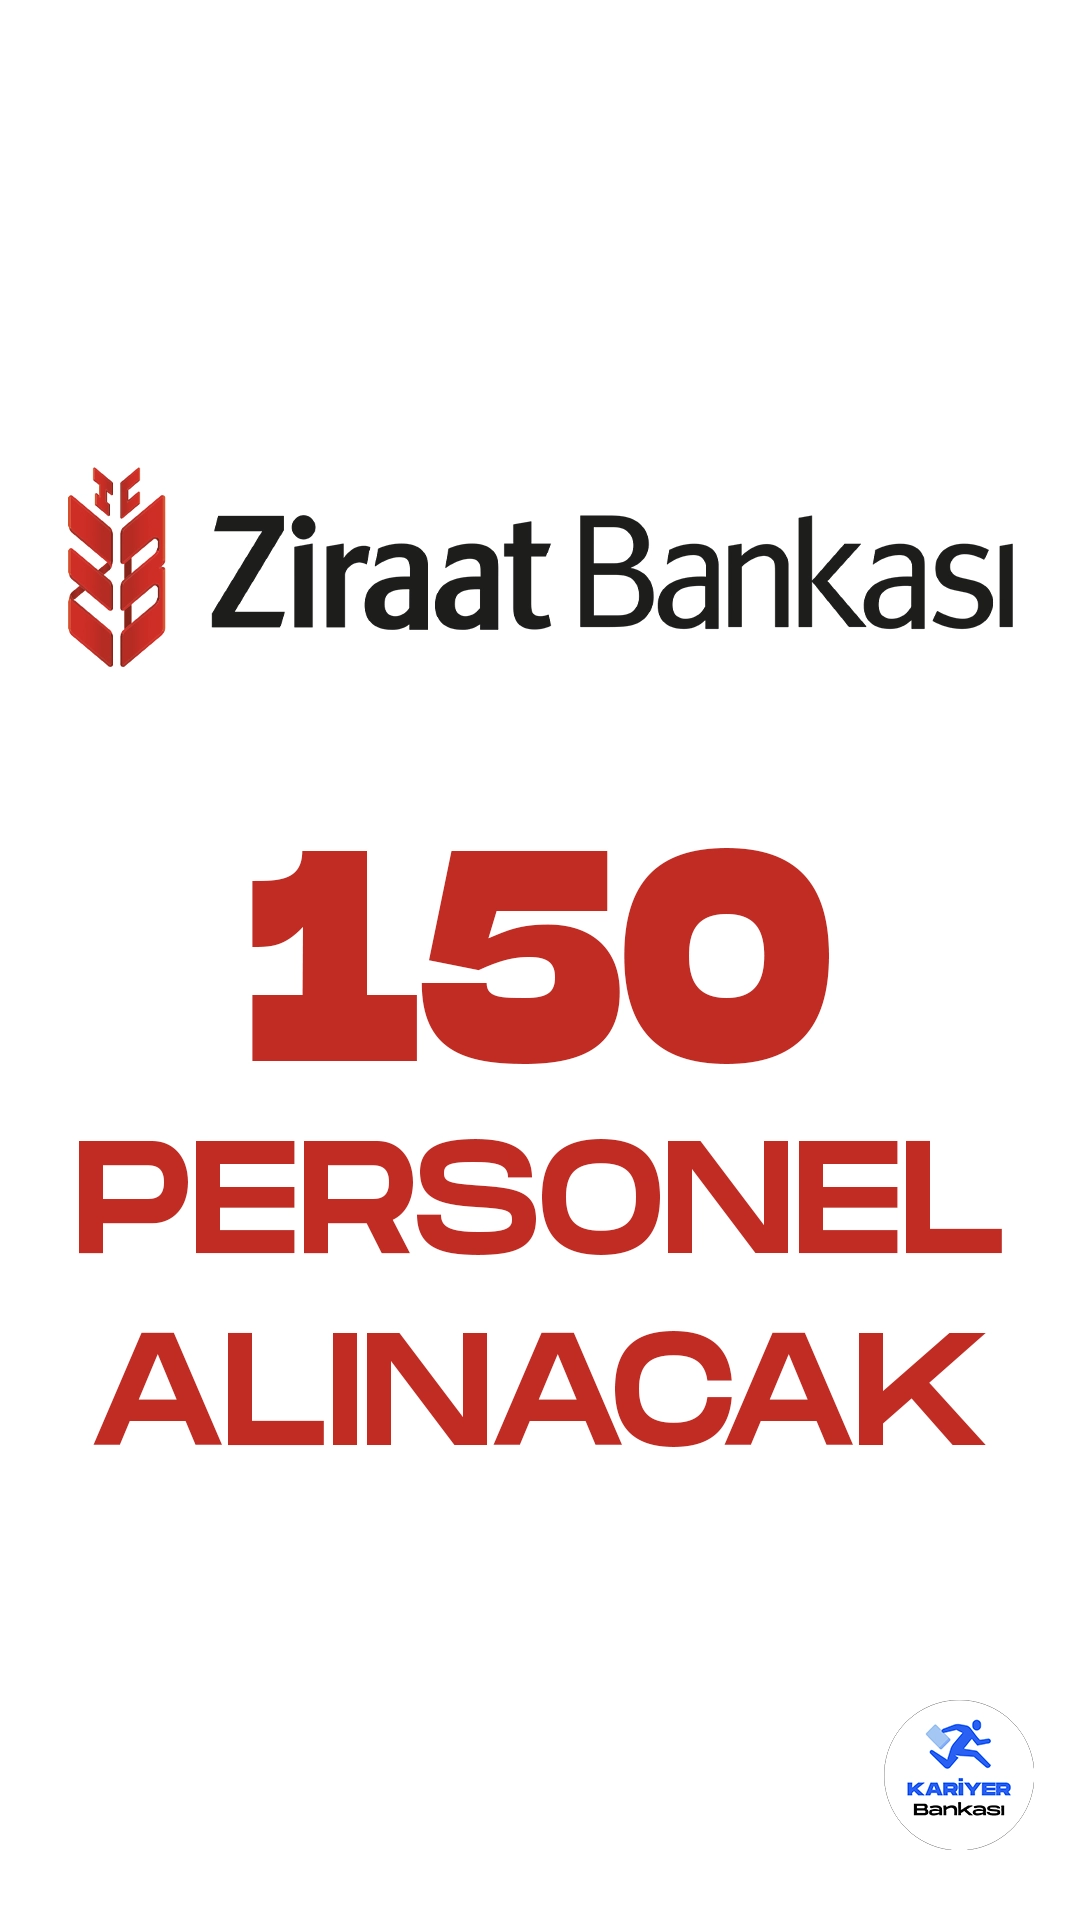 Ziraat Bankası, İstanbul Genel Müdürlük Birimleri ve Şubelerinde istihdam etmek üzere 150 Uzman Yardımcısı alımı başvuruları sürüyor.Başvuru sürecine ilişkin detaylar ve başvuru şartları belirlendi.